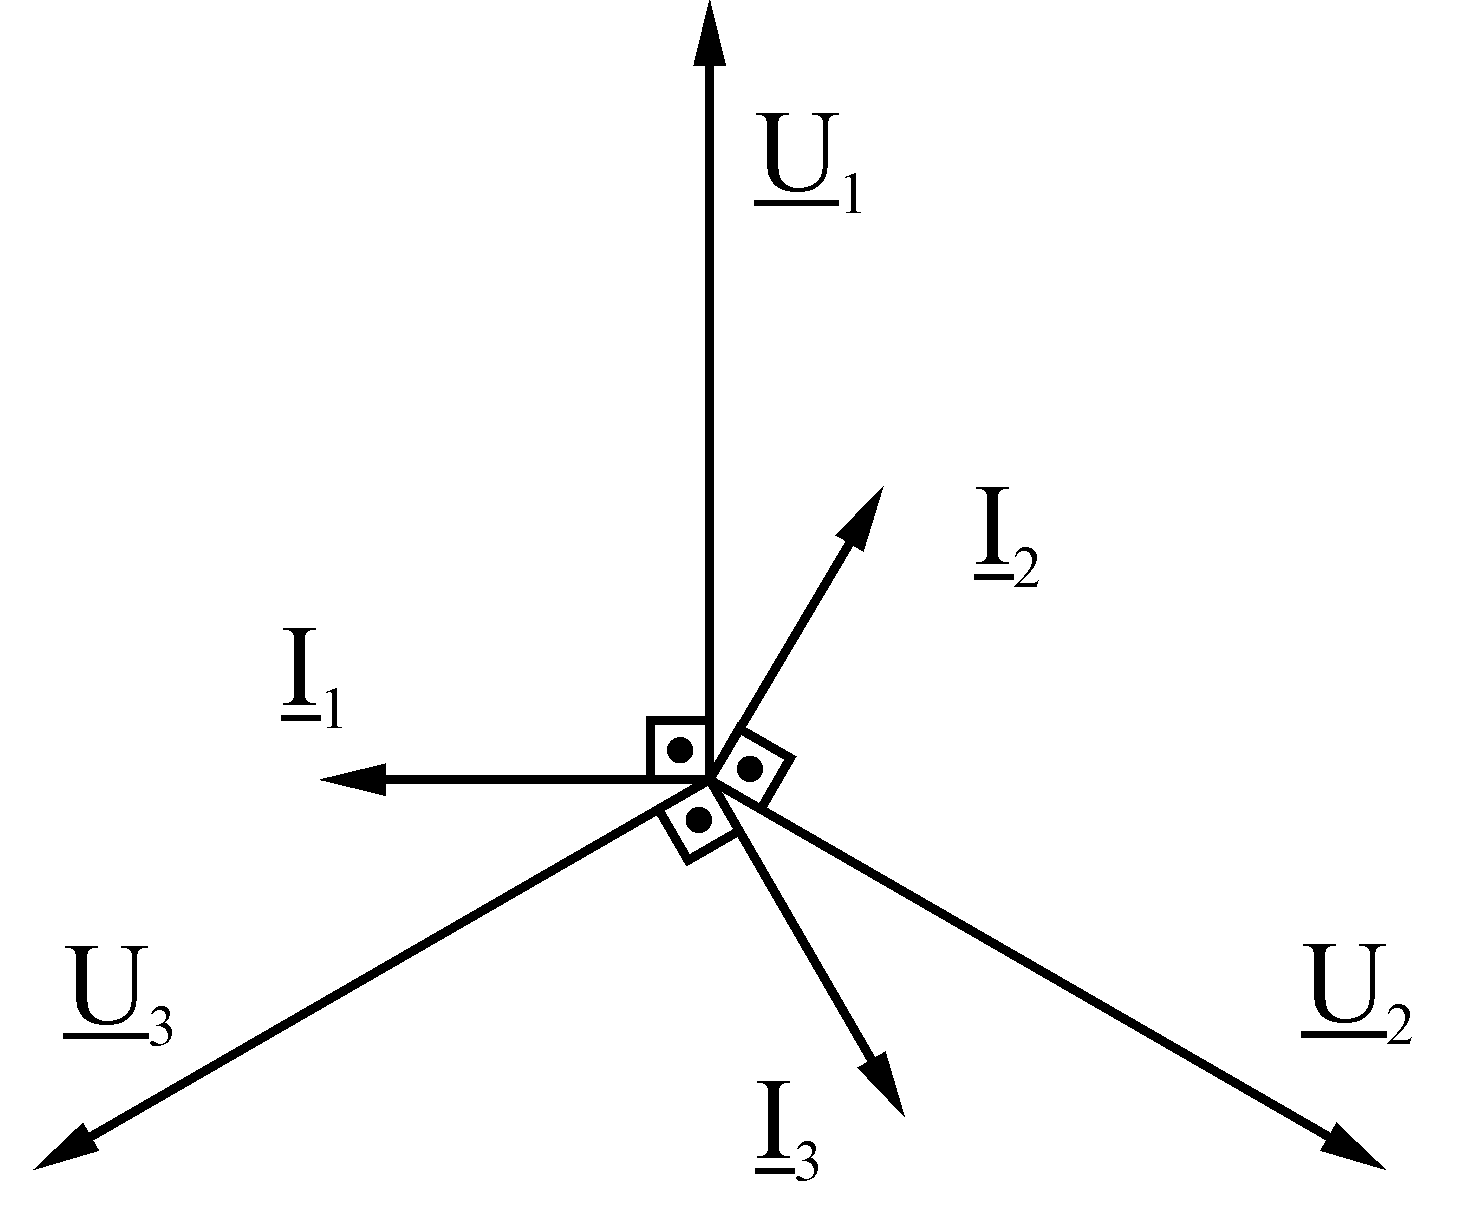 Векторная диаграмма цепи с с-элементом изображена на рисунке